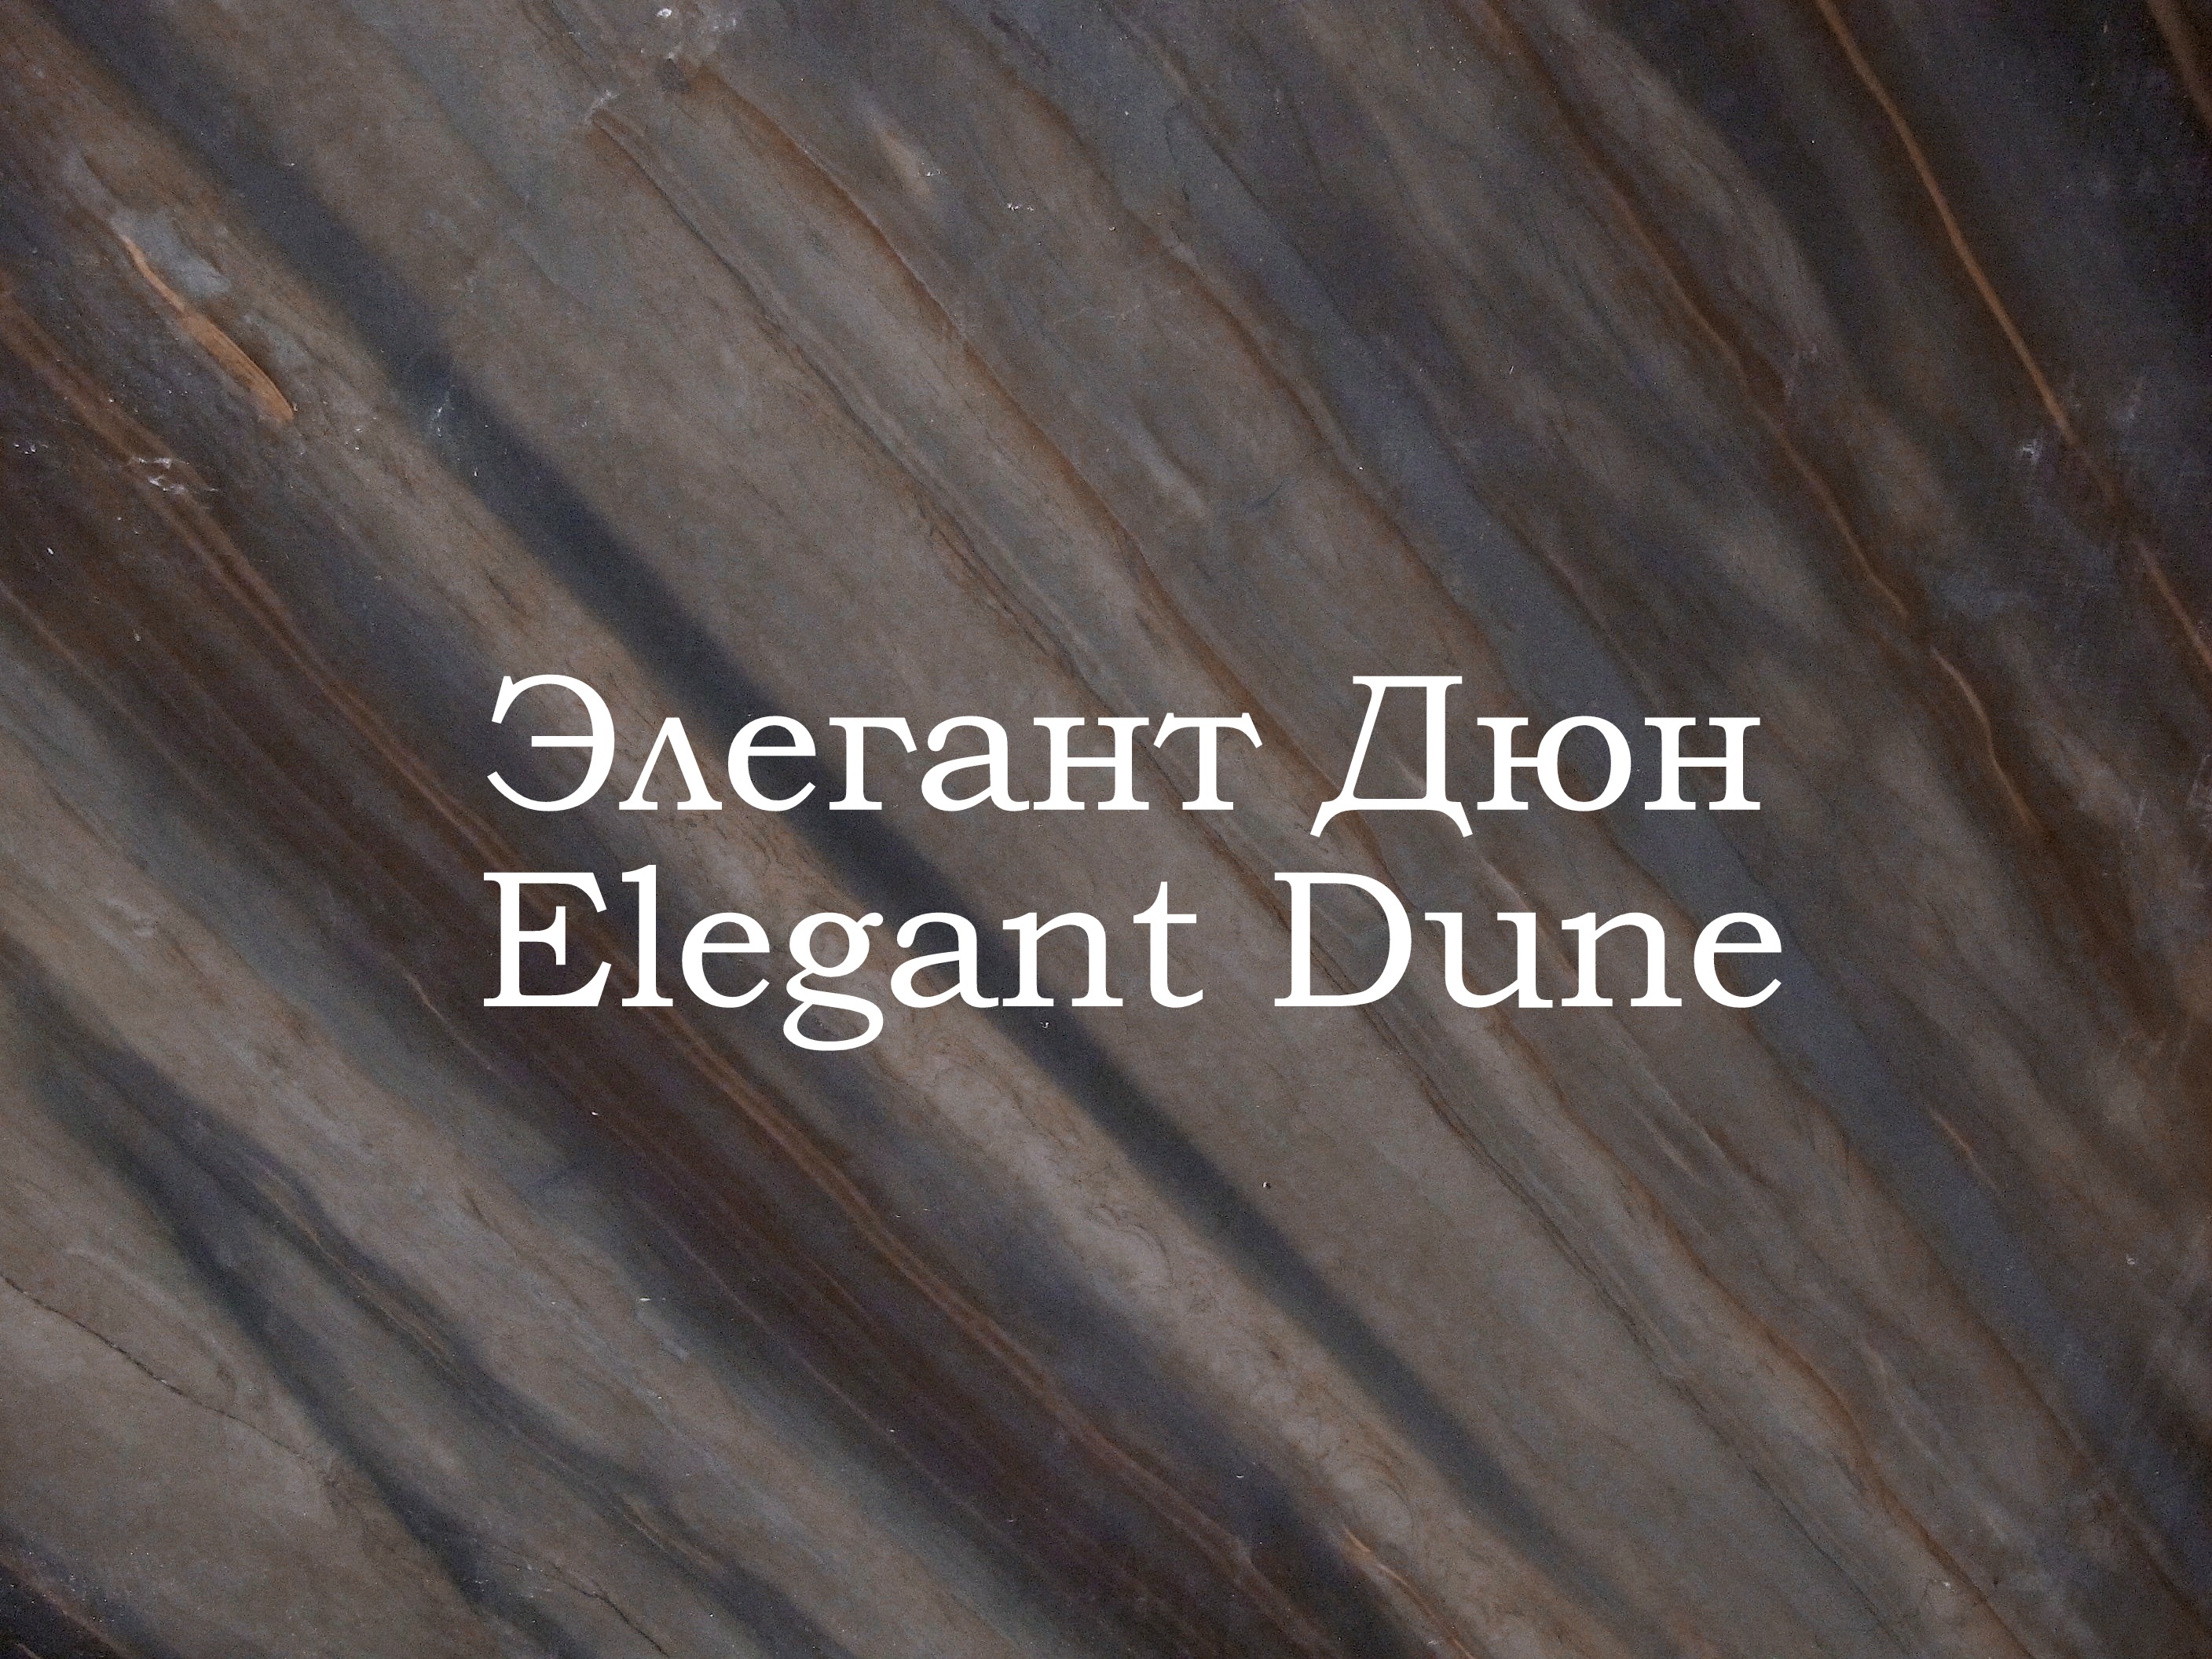 Гранит Элегант Дюн / Elegant Dune 